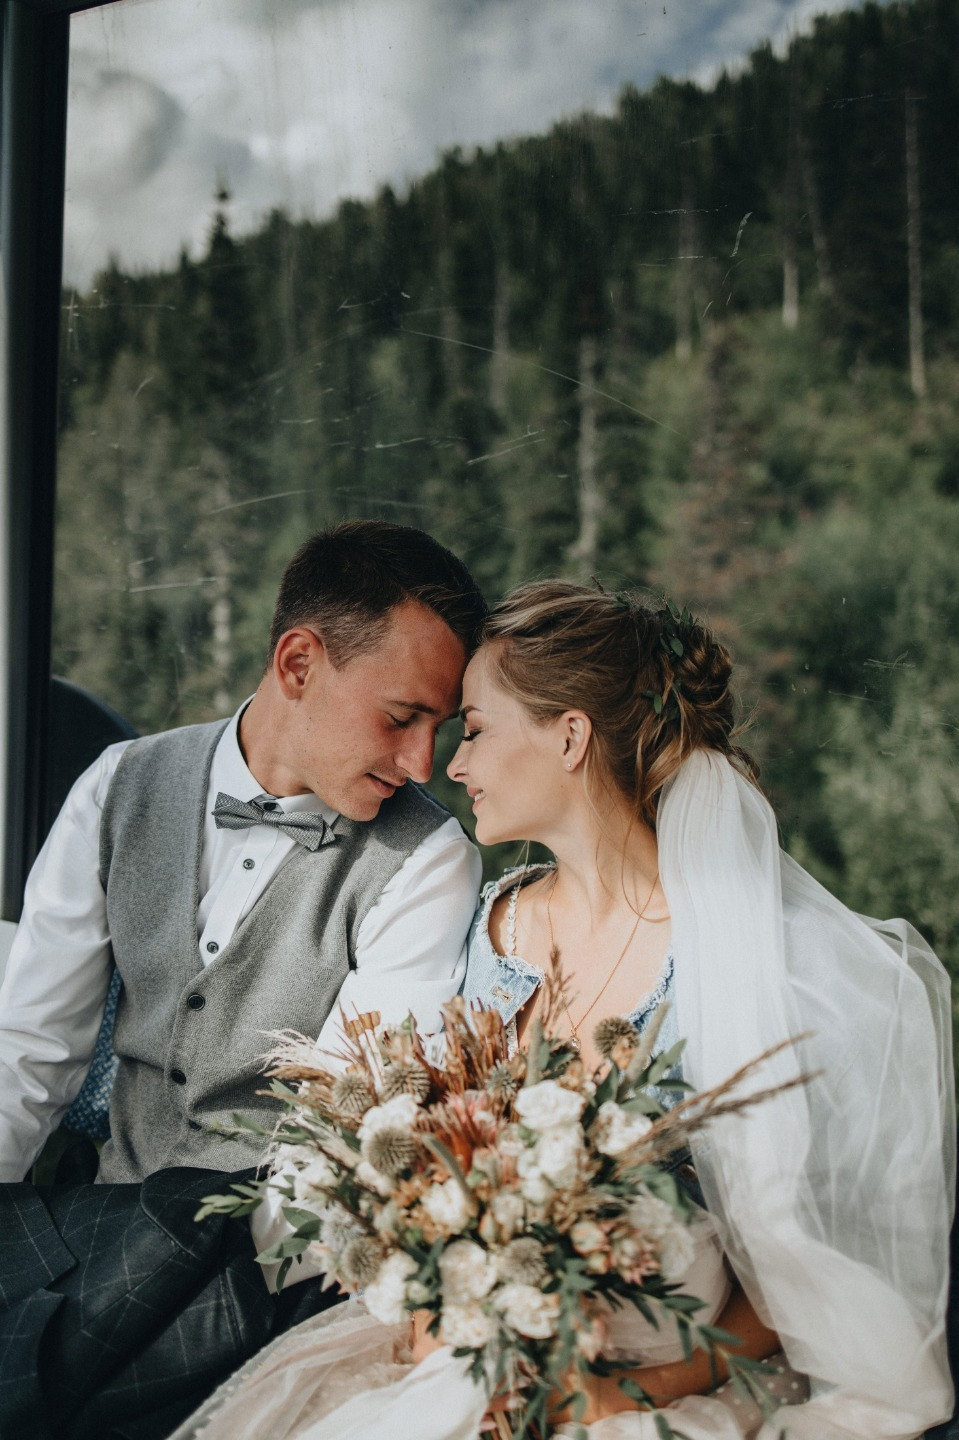 Выше только любовь: камерная рустик-свадьба в горах